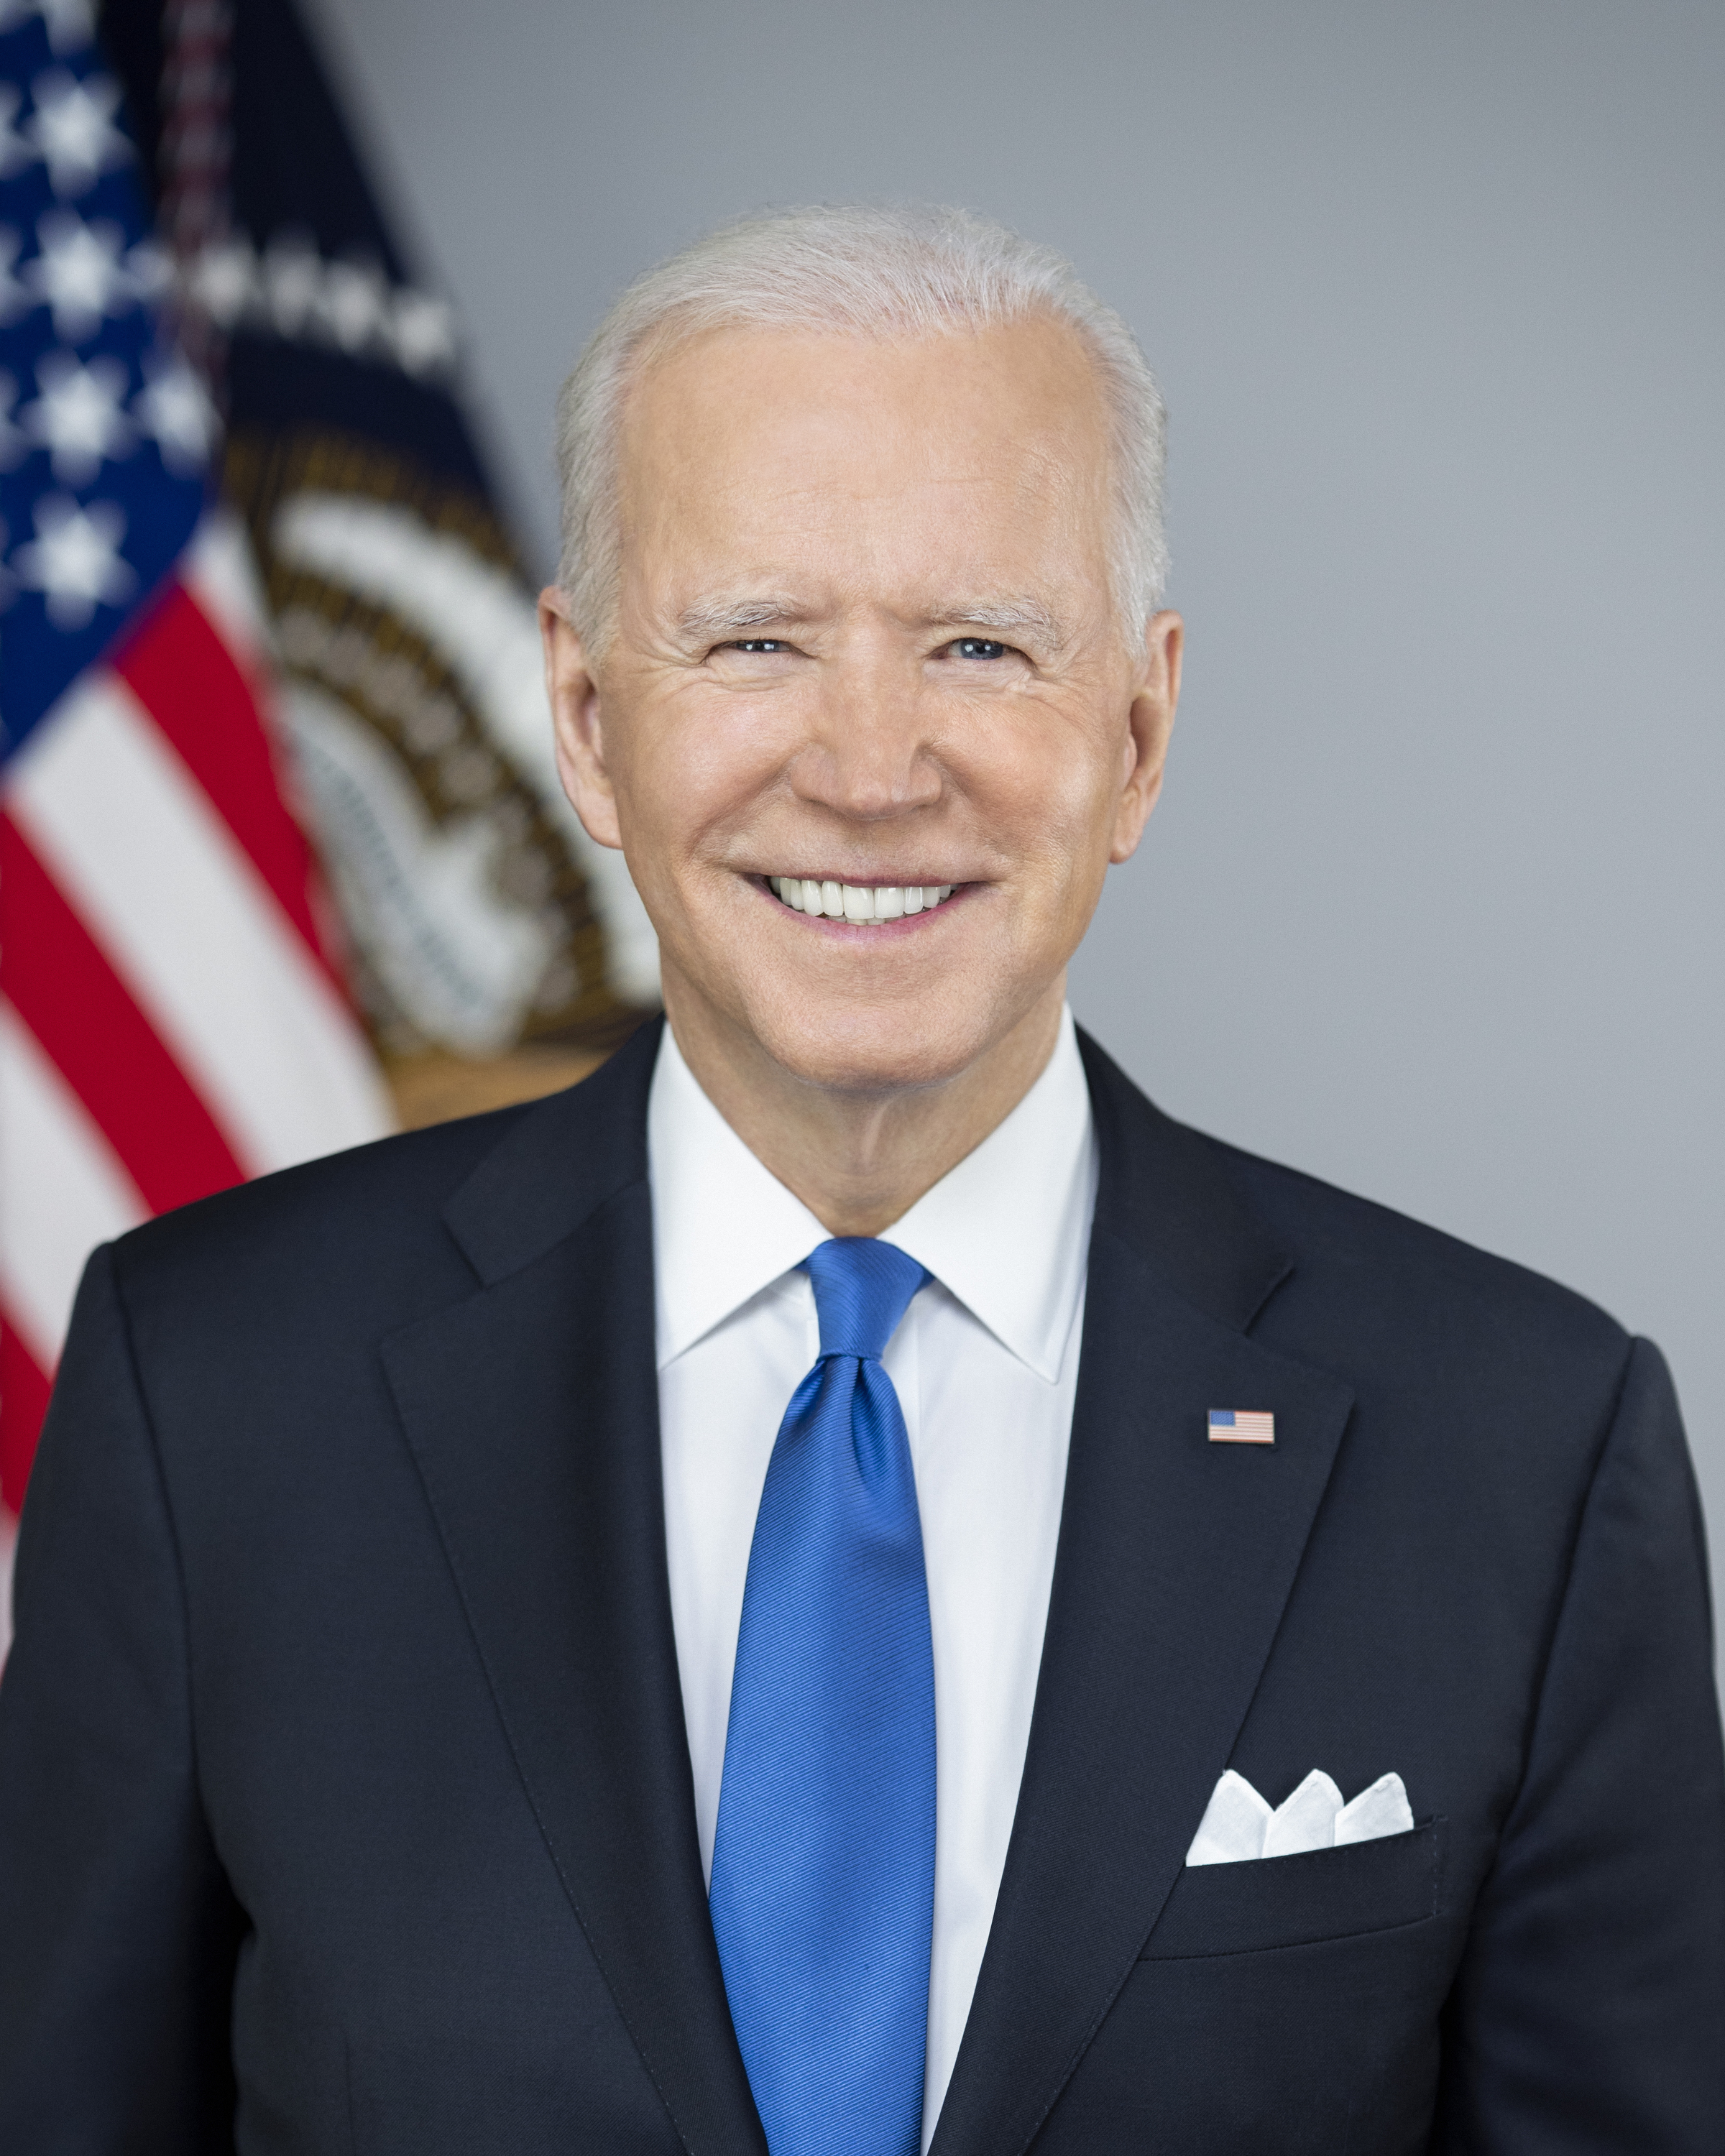 Joe Biden: The President | The White House